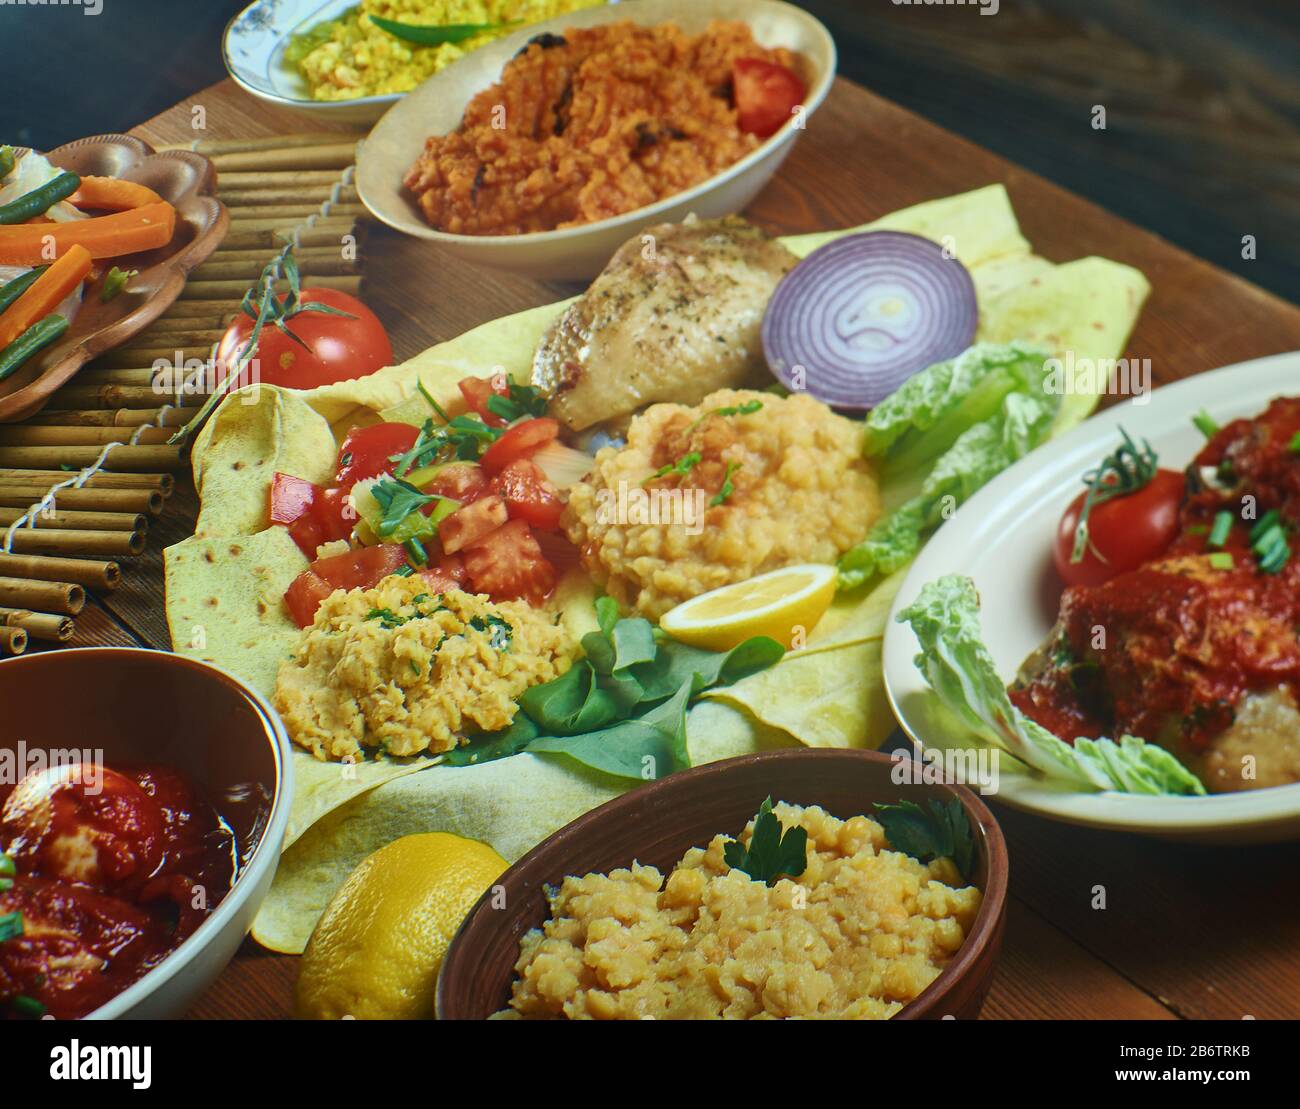 Äthiopische Küche, Traditionelle afrikanische Gerichte, Draufsicht. Stockfoto